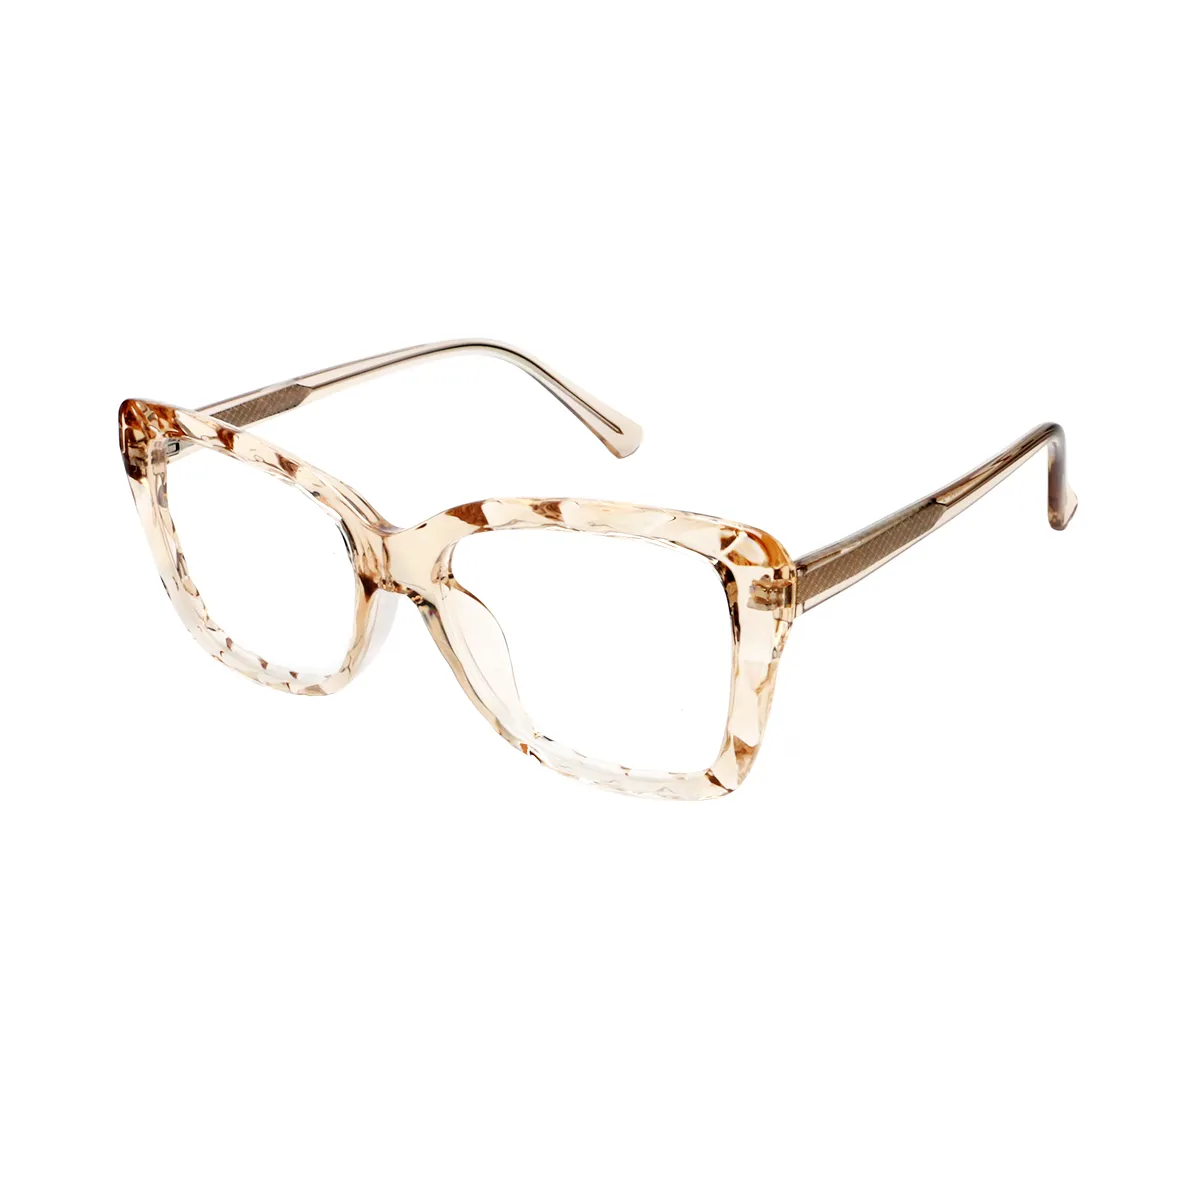 Hart - Square  Glasses for Women